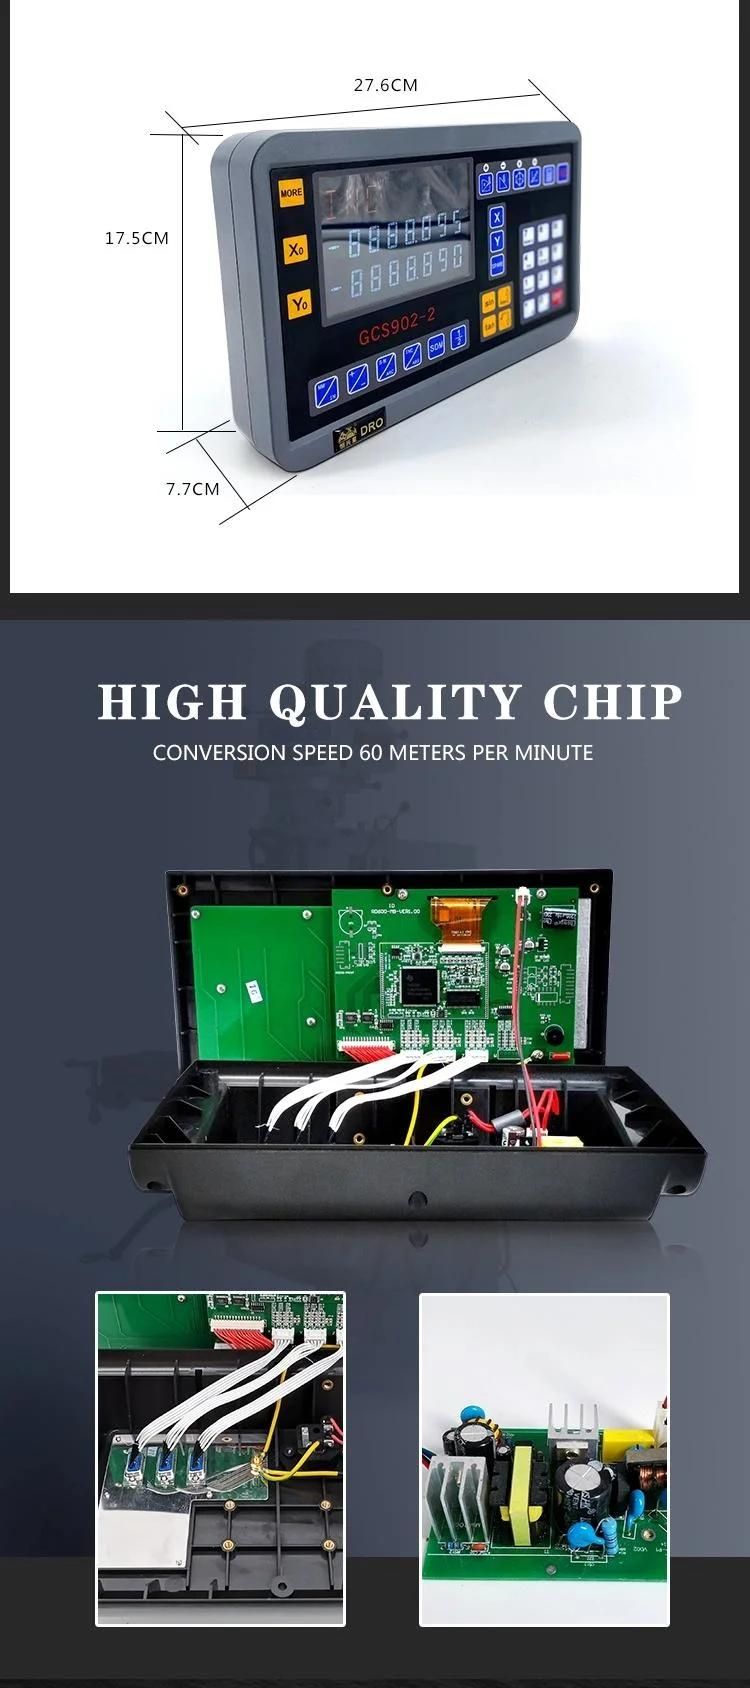 High Precision Dro Gcs902-2 Digital Readout for Grinder& EDM Machine